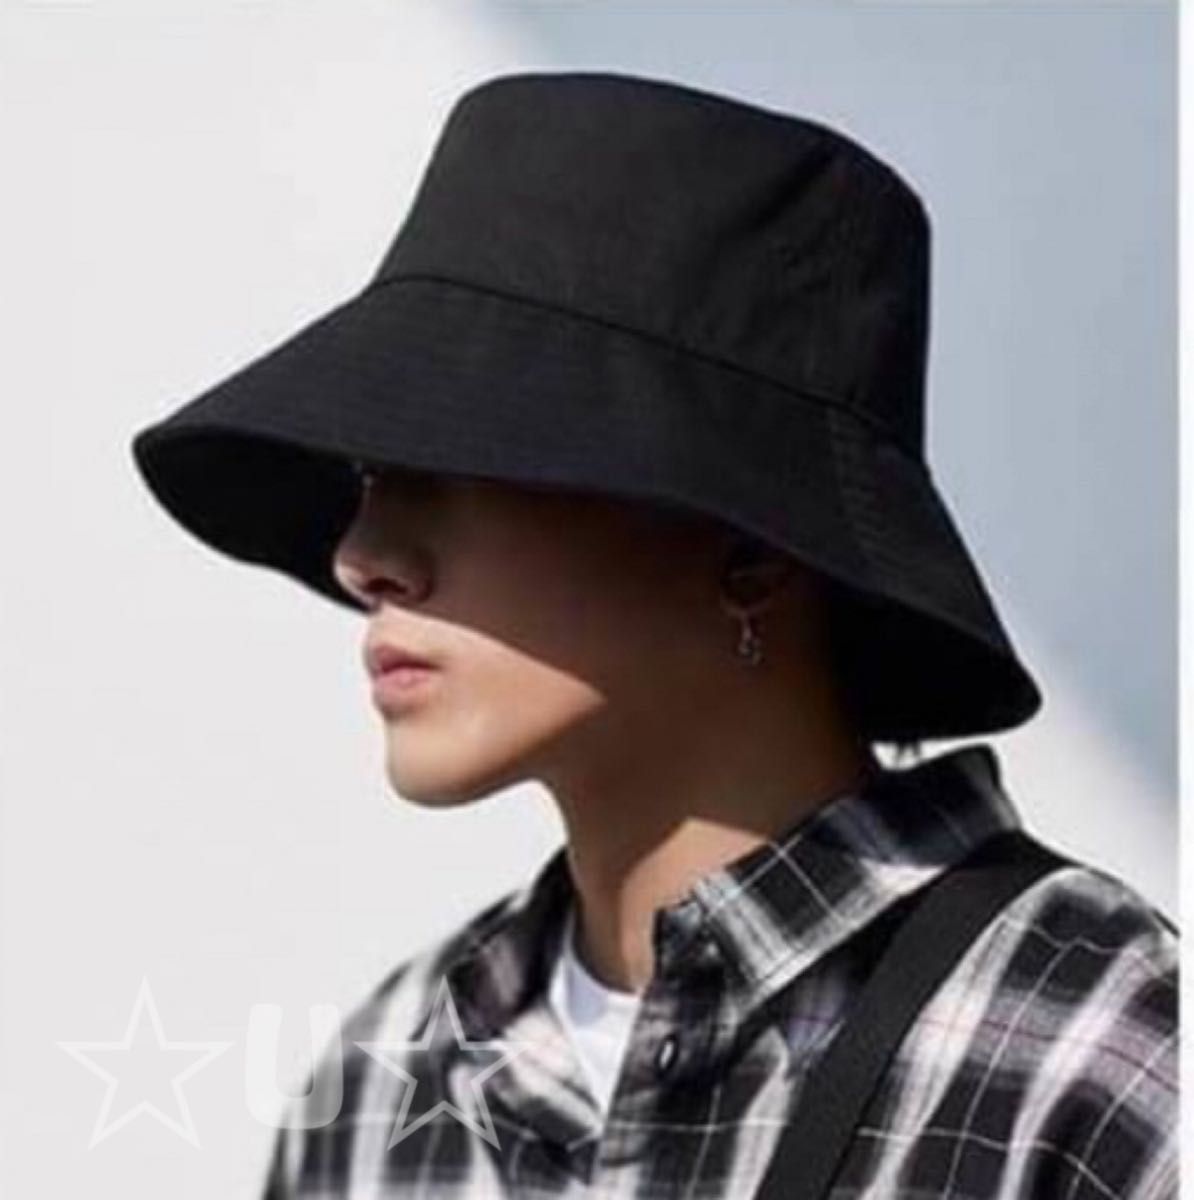 バケットハット メンズ　帽子 レディース 韓国 男女兼用 黒 ブラック 定番 UVカット ハット 日焼け防止 小顔